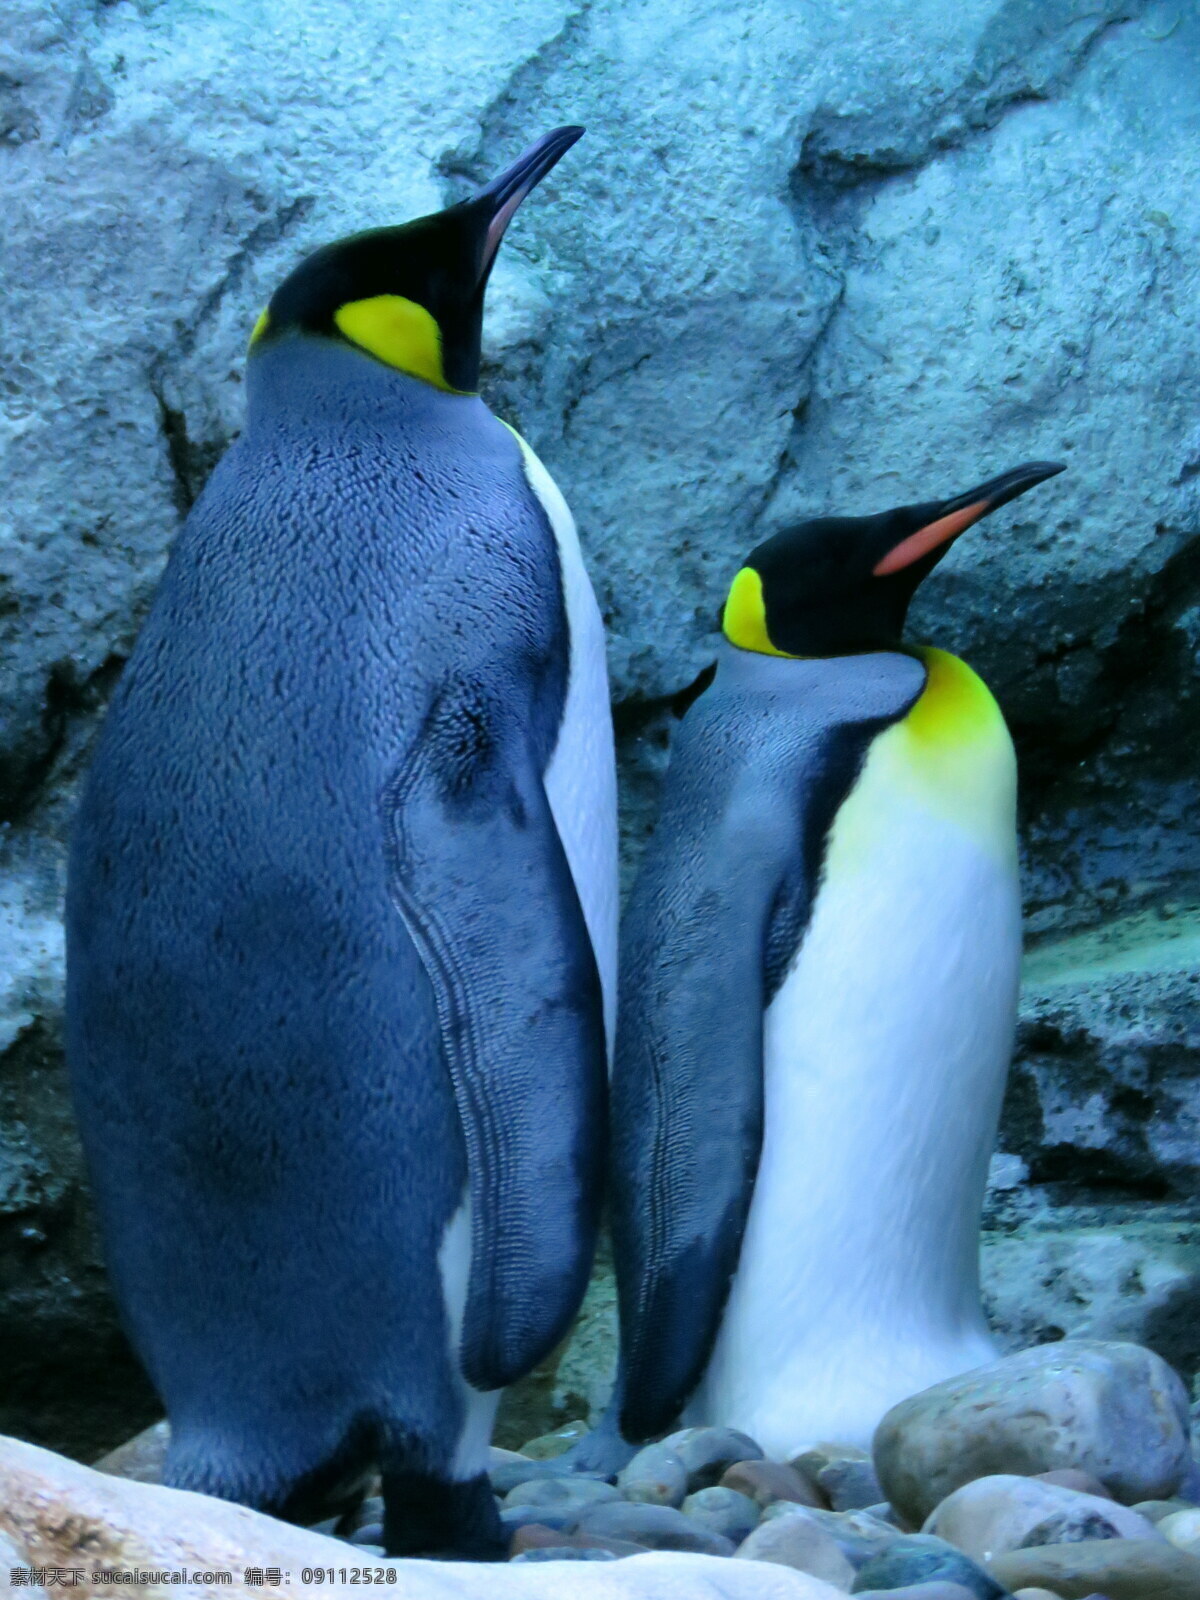 唯美 动物 可爱 野生 企鹅 南极企鹅 帝企鹅 可爱企鹅 生物世界 野生动物